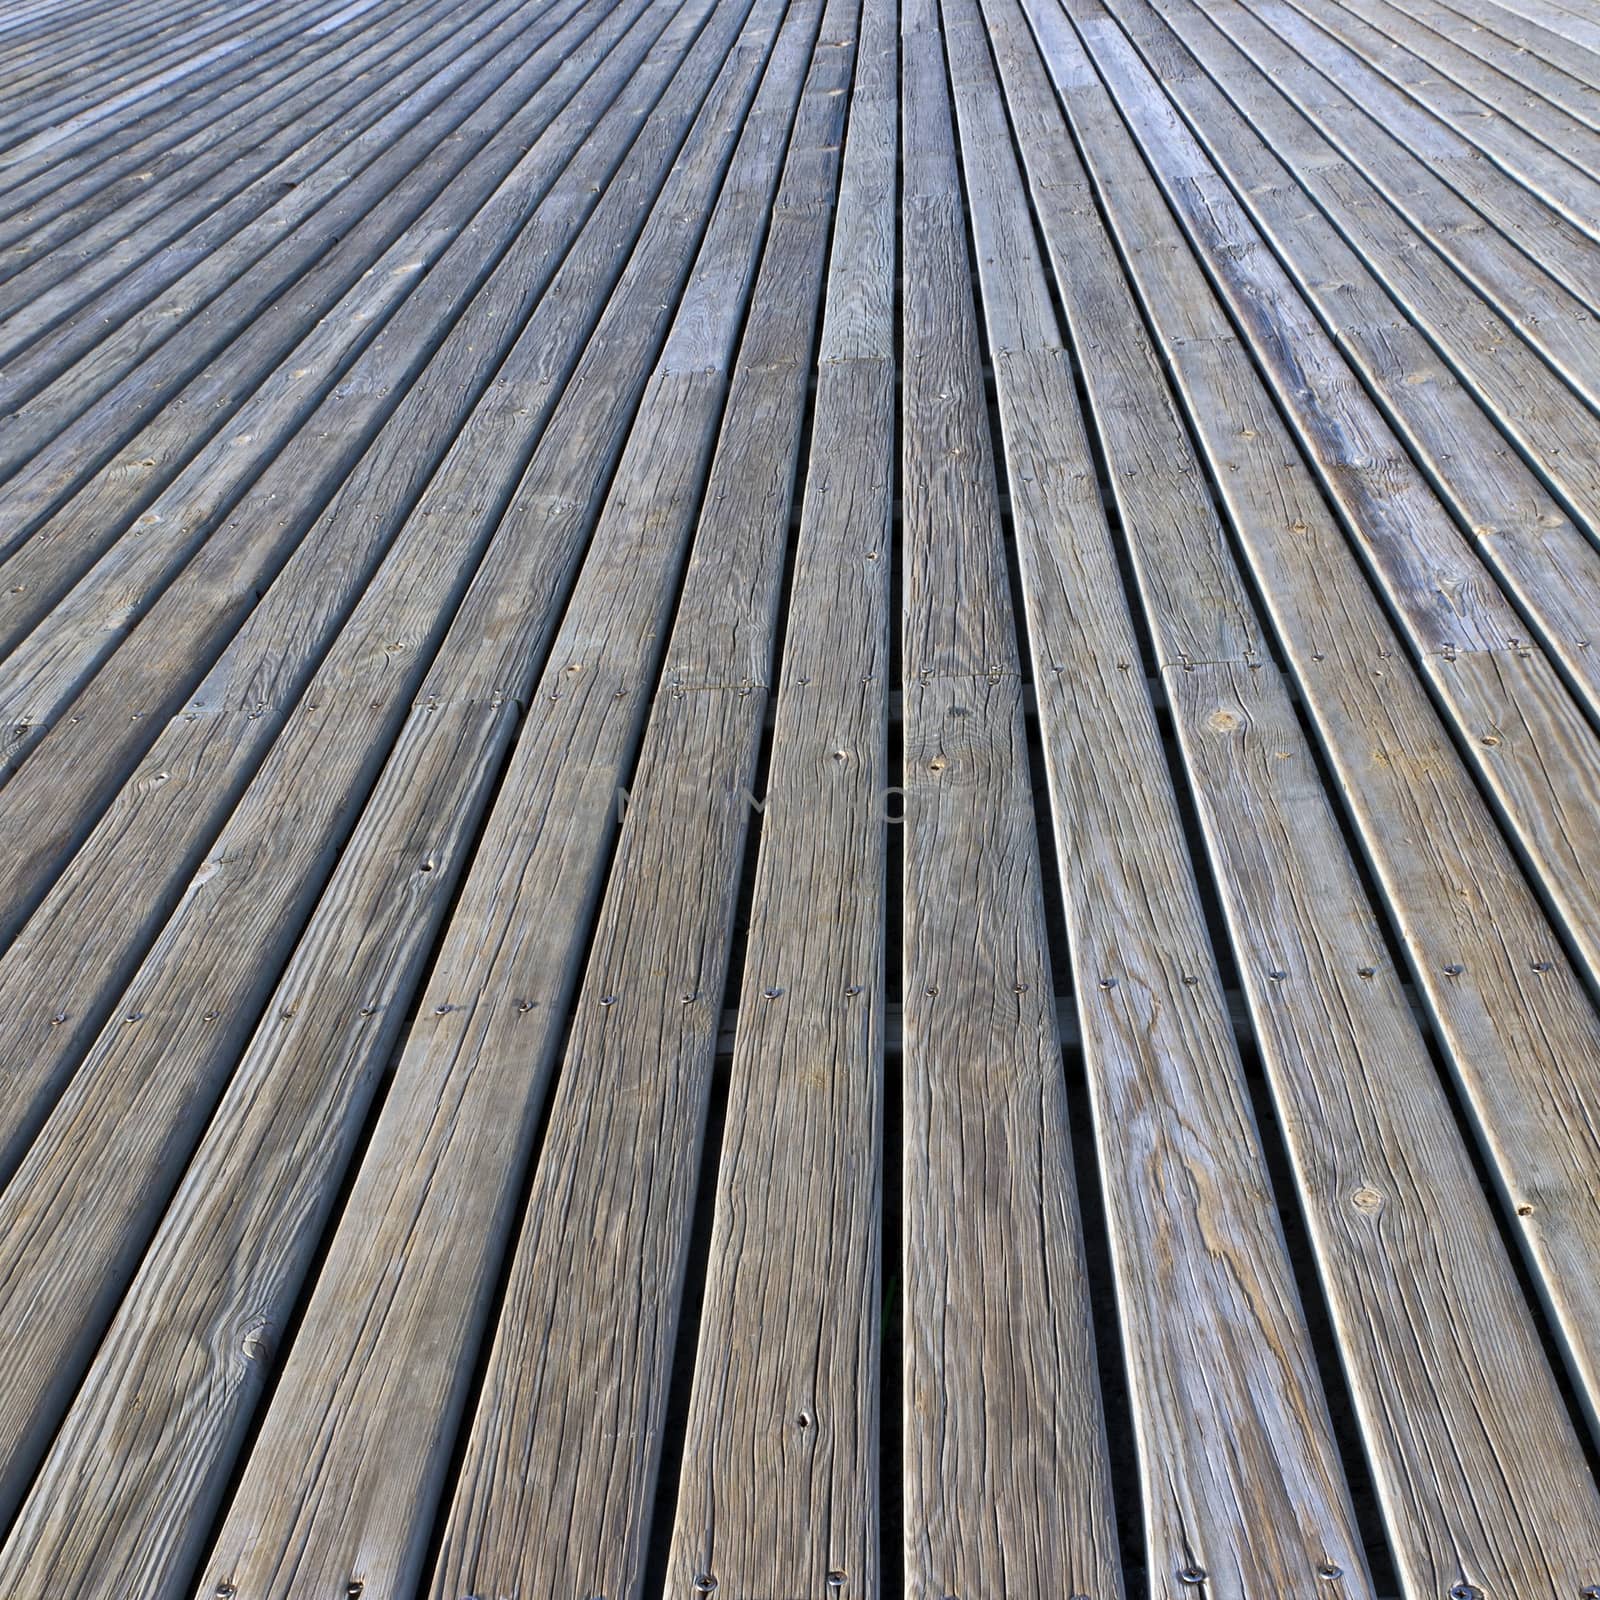 wood perspective hardwood plank wooden floor background